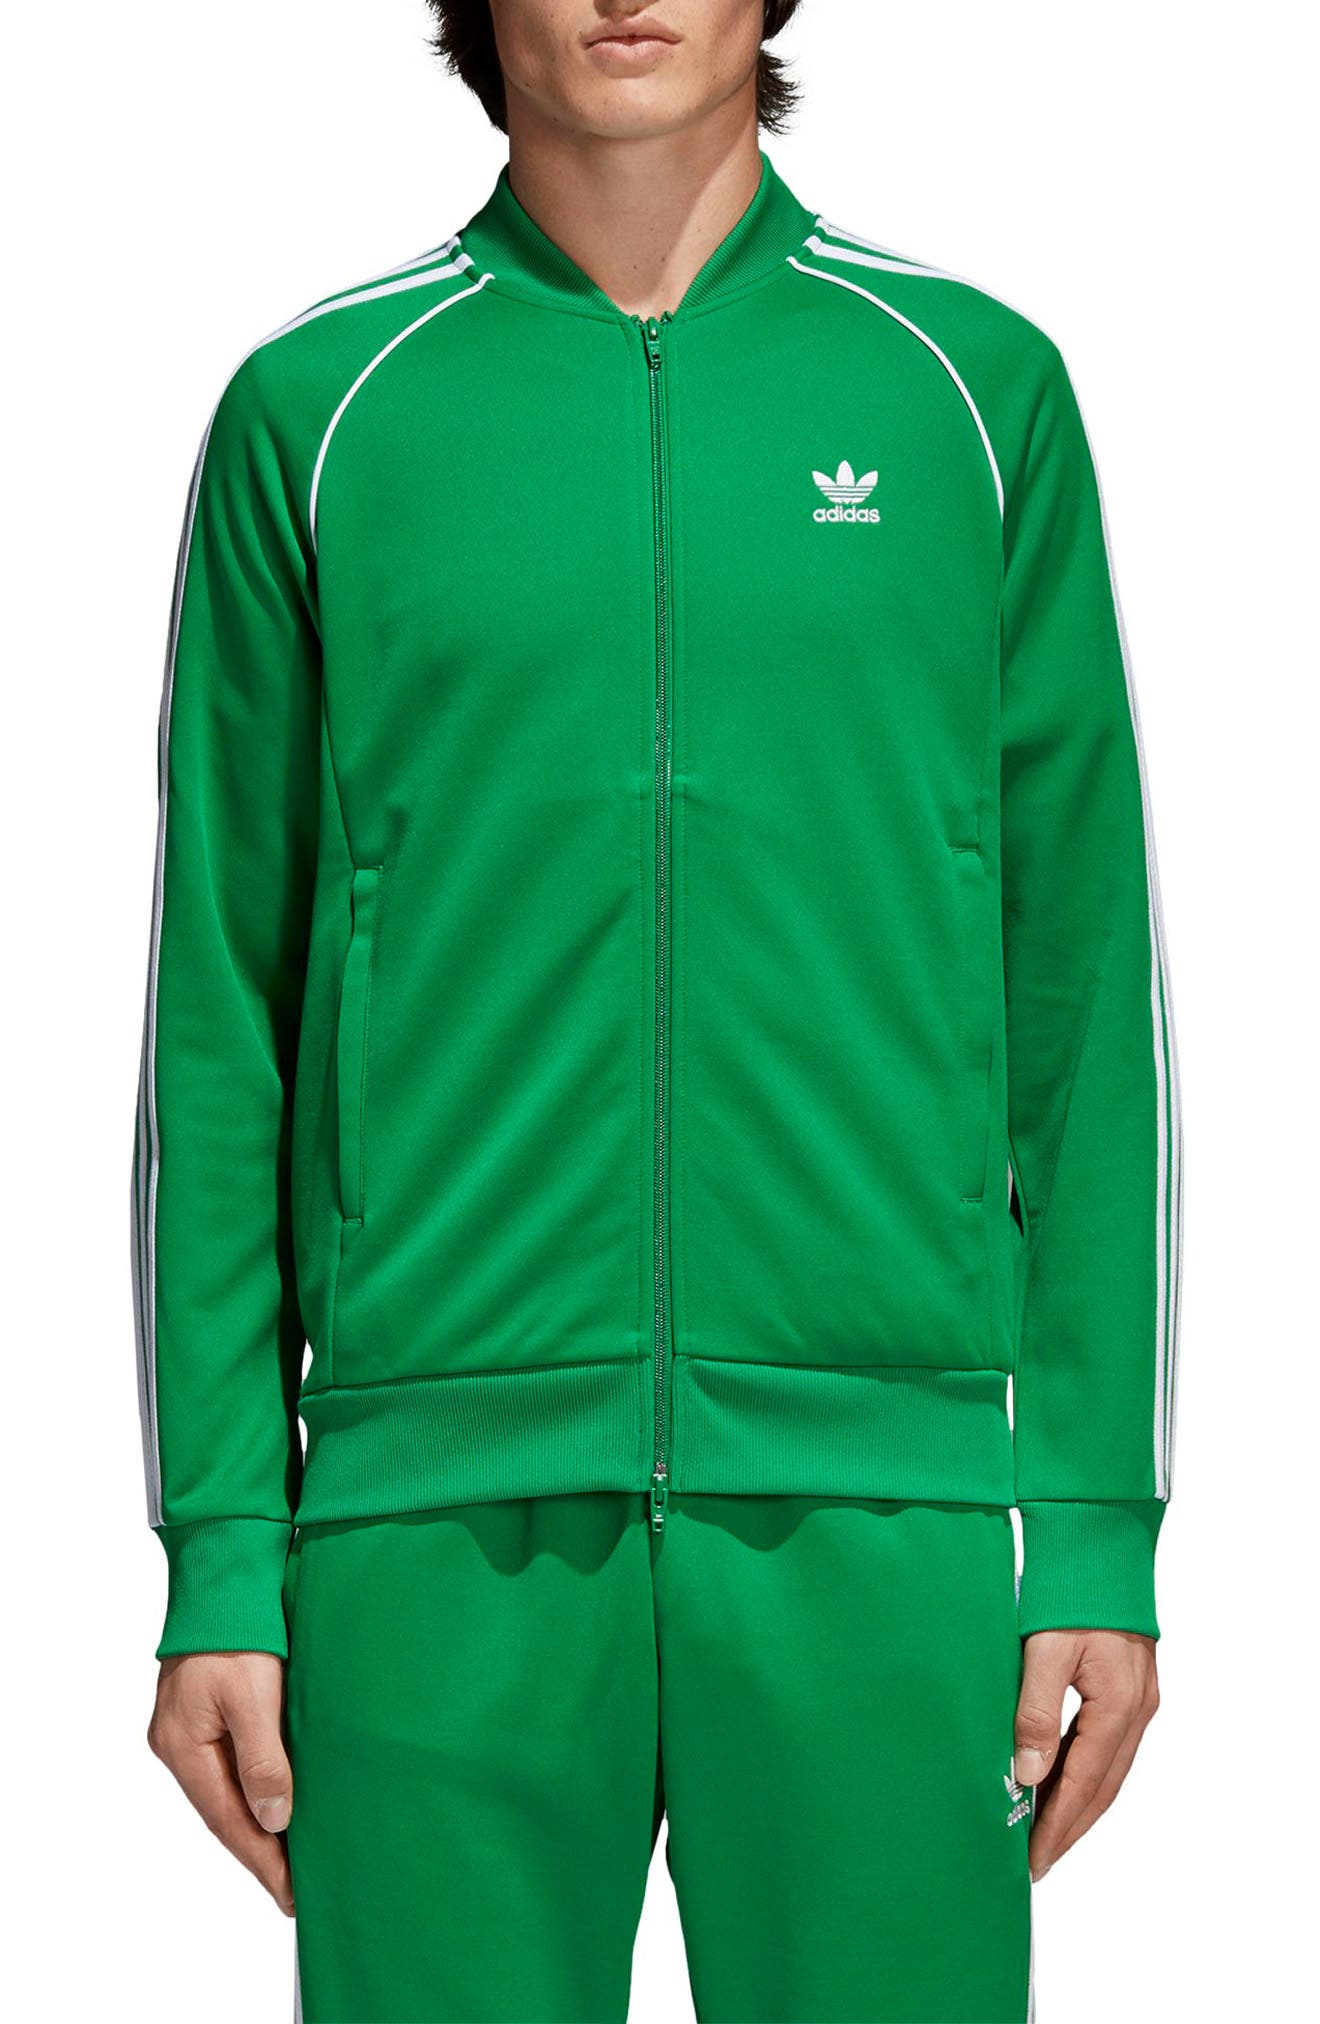 sst track jacket green